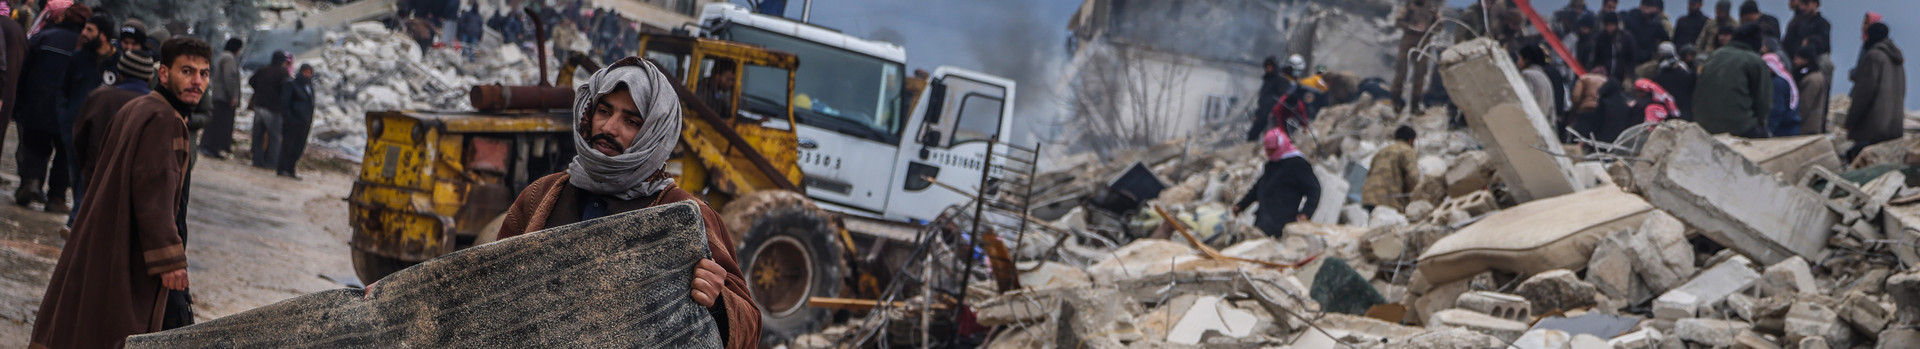 Mann trägt eine schwarze Matraze, im Hintergrund sind zerstörrte Gebäude zu sehen